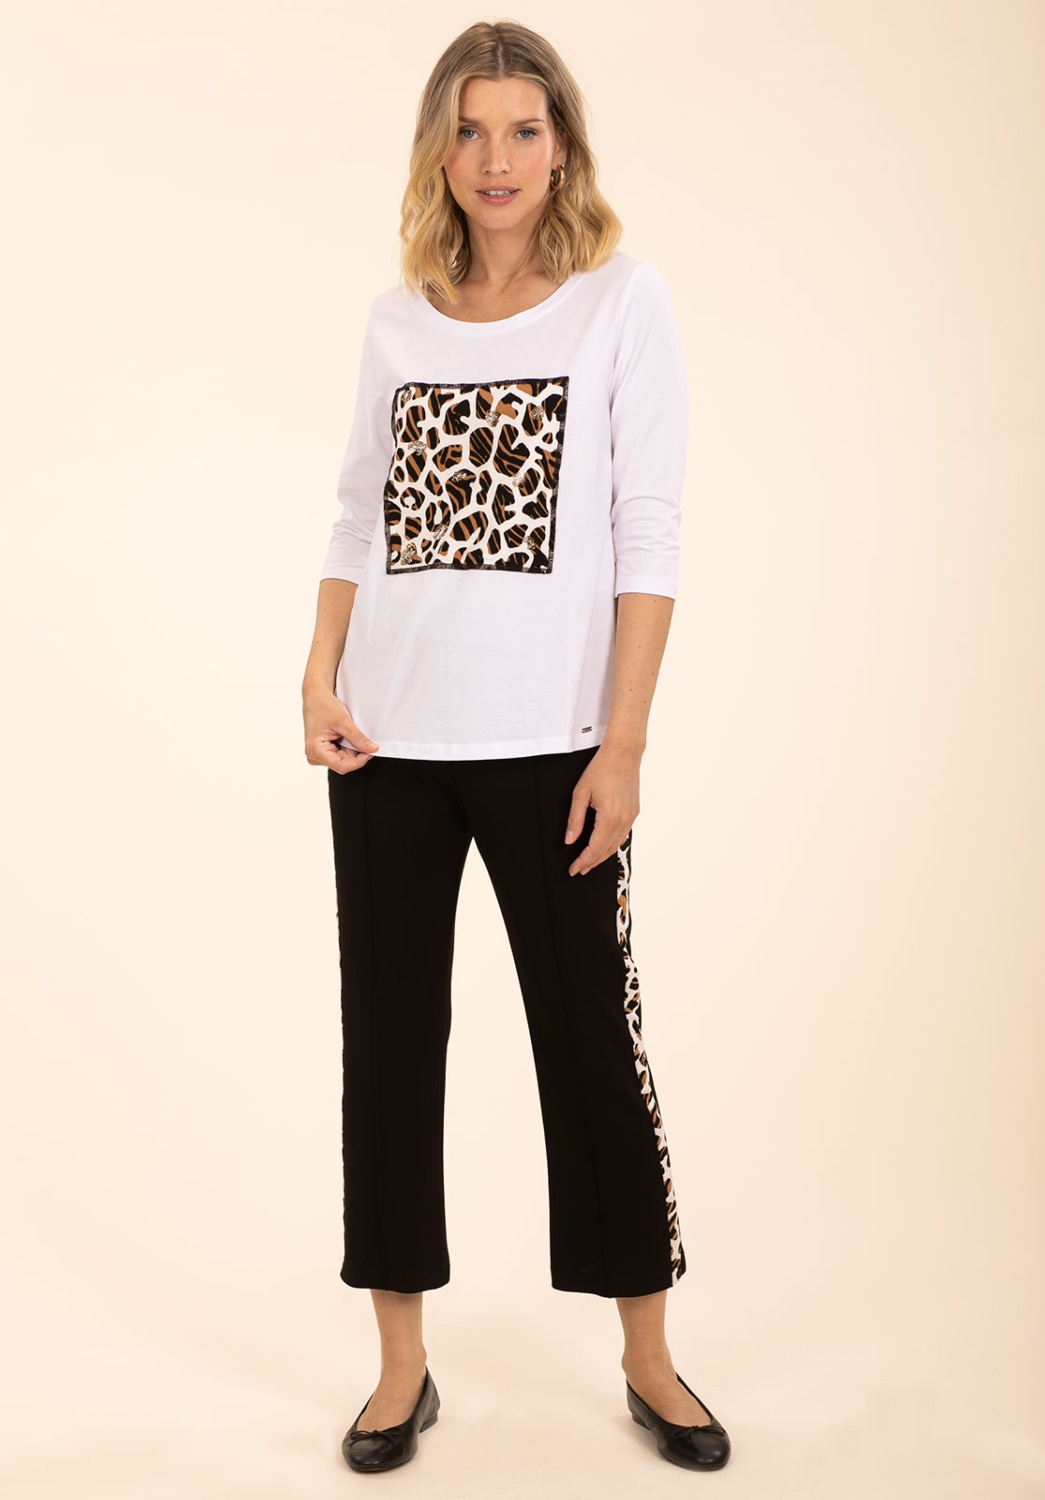 Pantalón Capri Leopardo, Pantalones Mujer